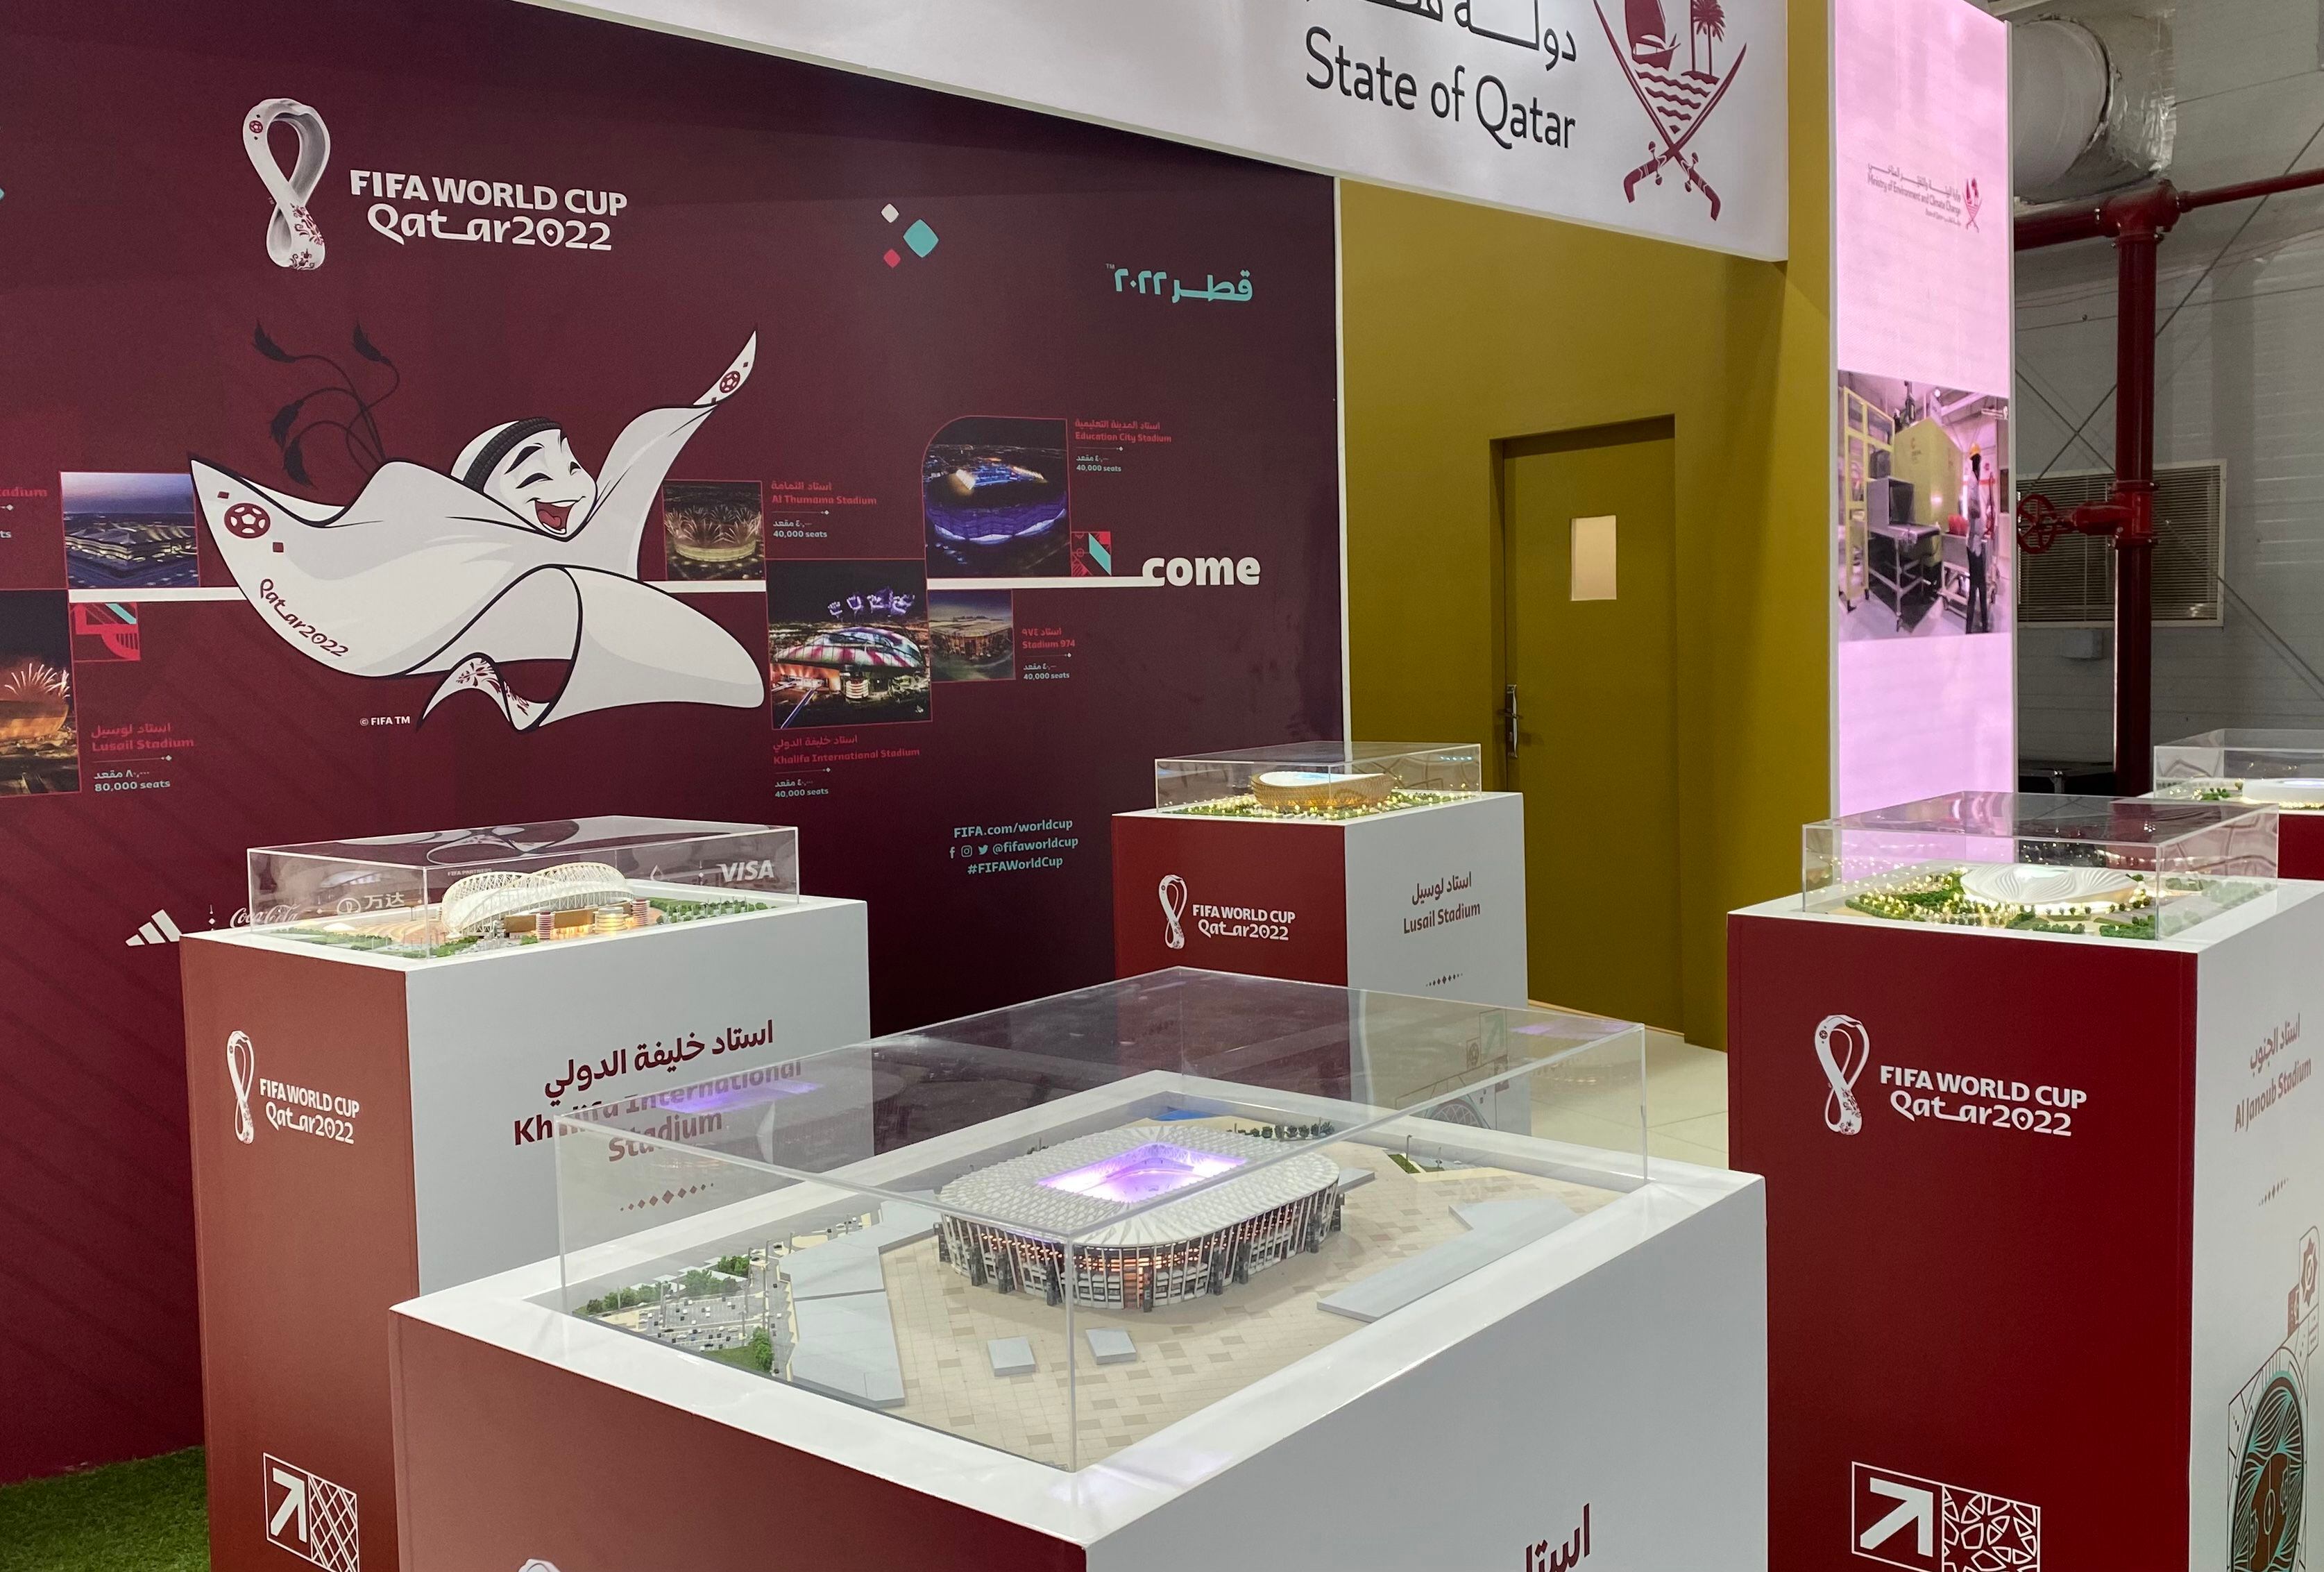 Qatar publicita Mundial en cumbre climática pese a señalamientos ambientales y humanitarios